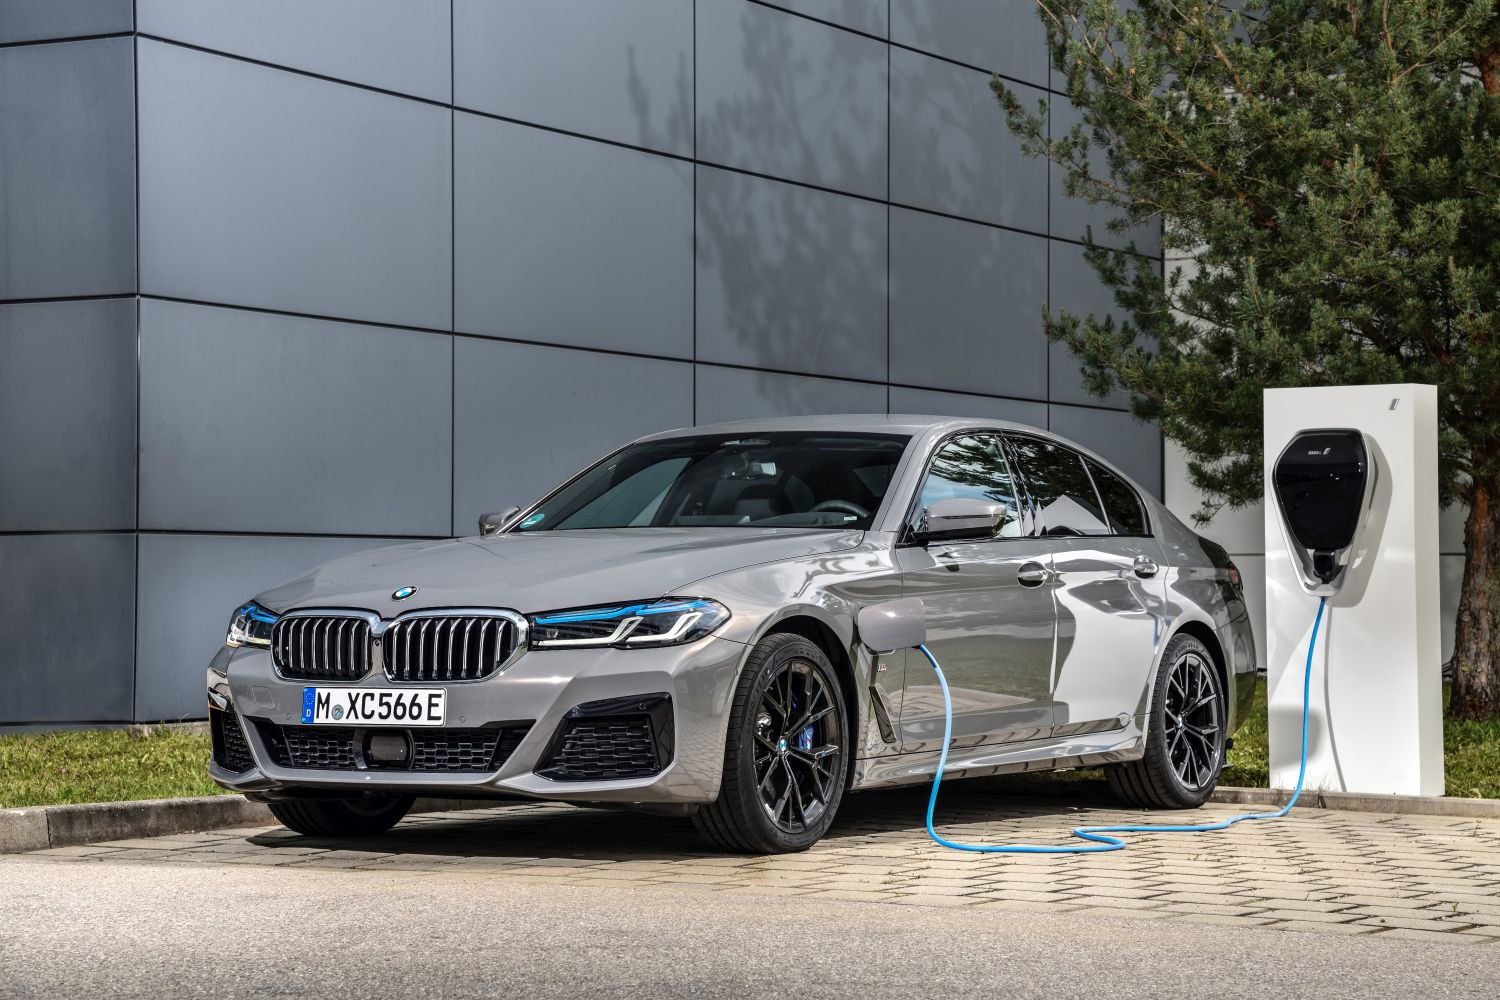 https://www.auto-data.net/images/f101/BMW-5-Series-Sedan-G30-LCI-facelift-2020_4.jpg